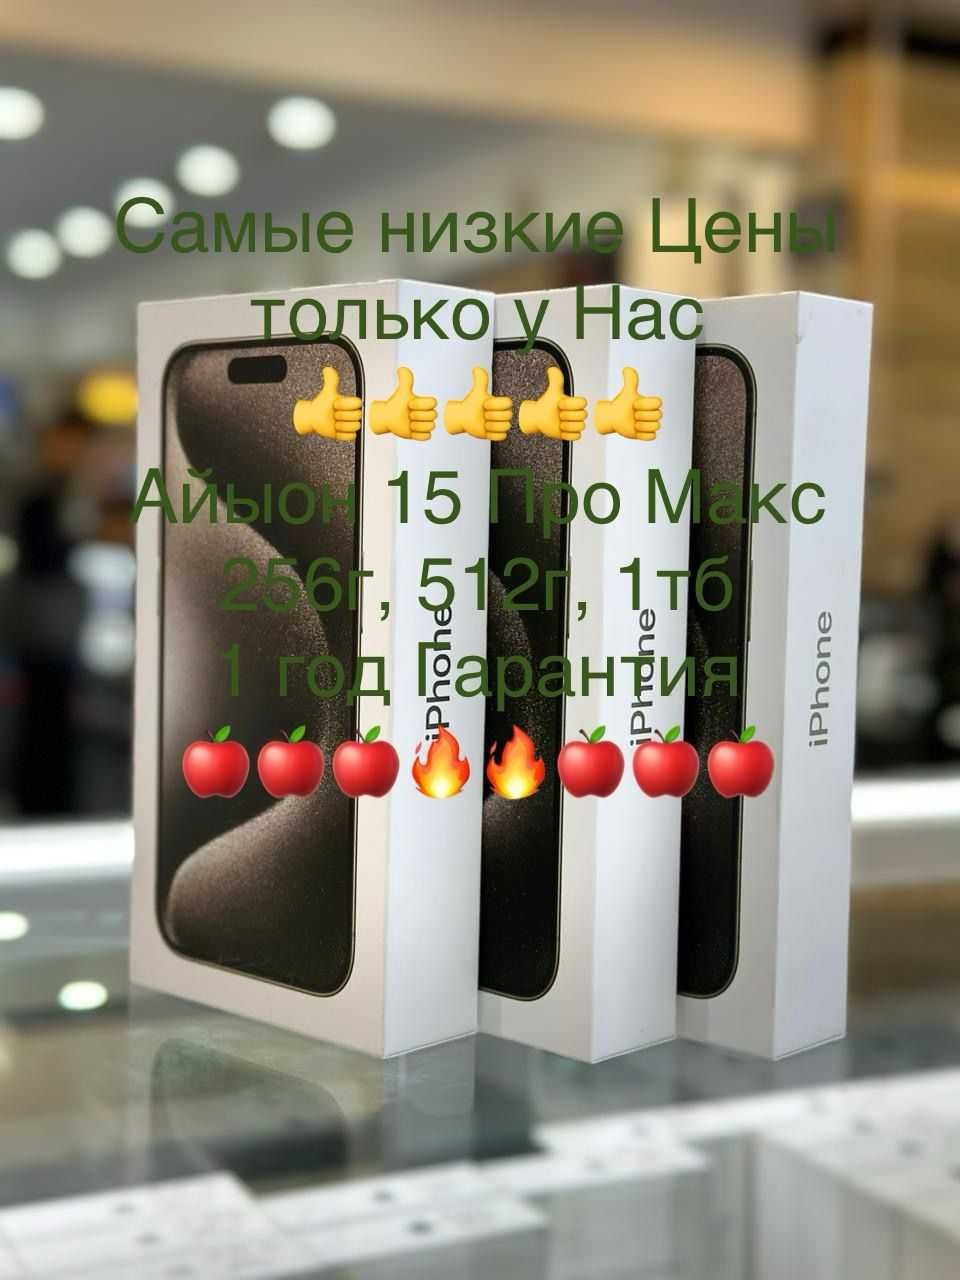 Айфон 15 Про Макс 512гб Натуральный Титан низкие оптовые цены в алматы